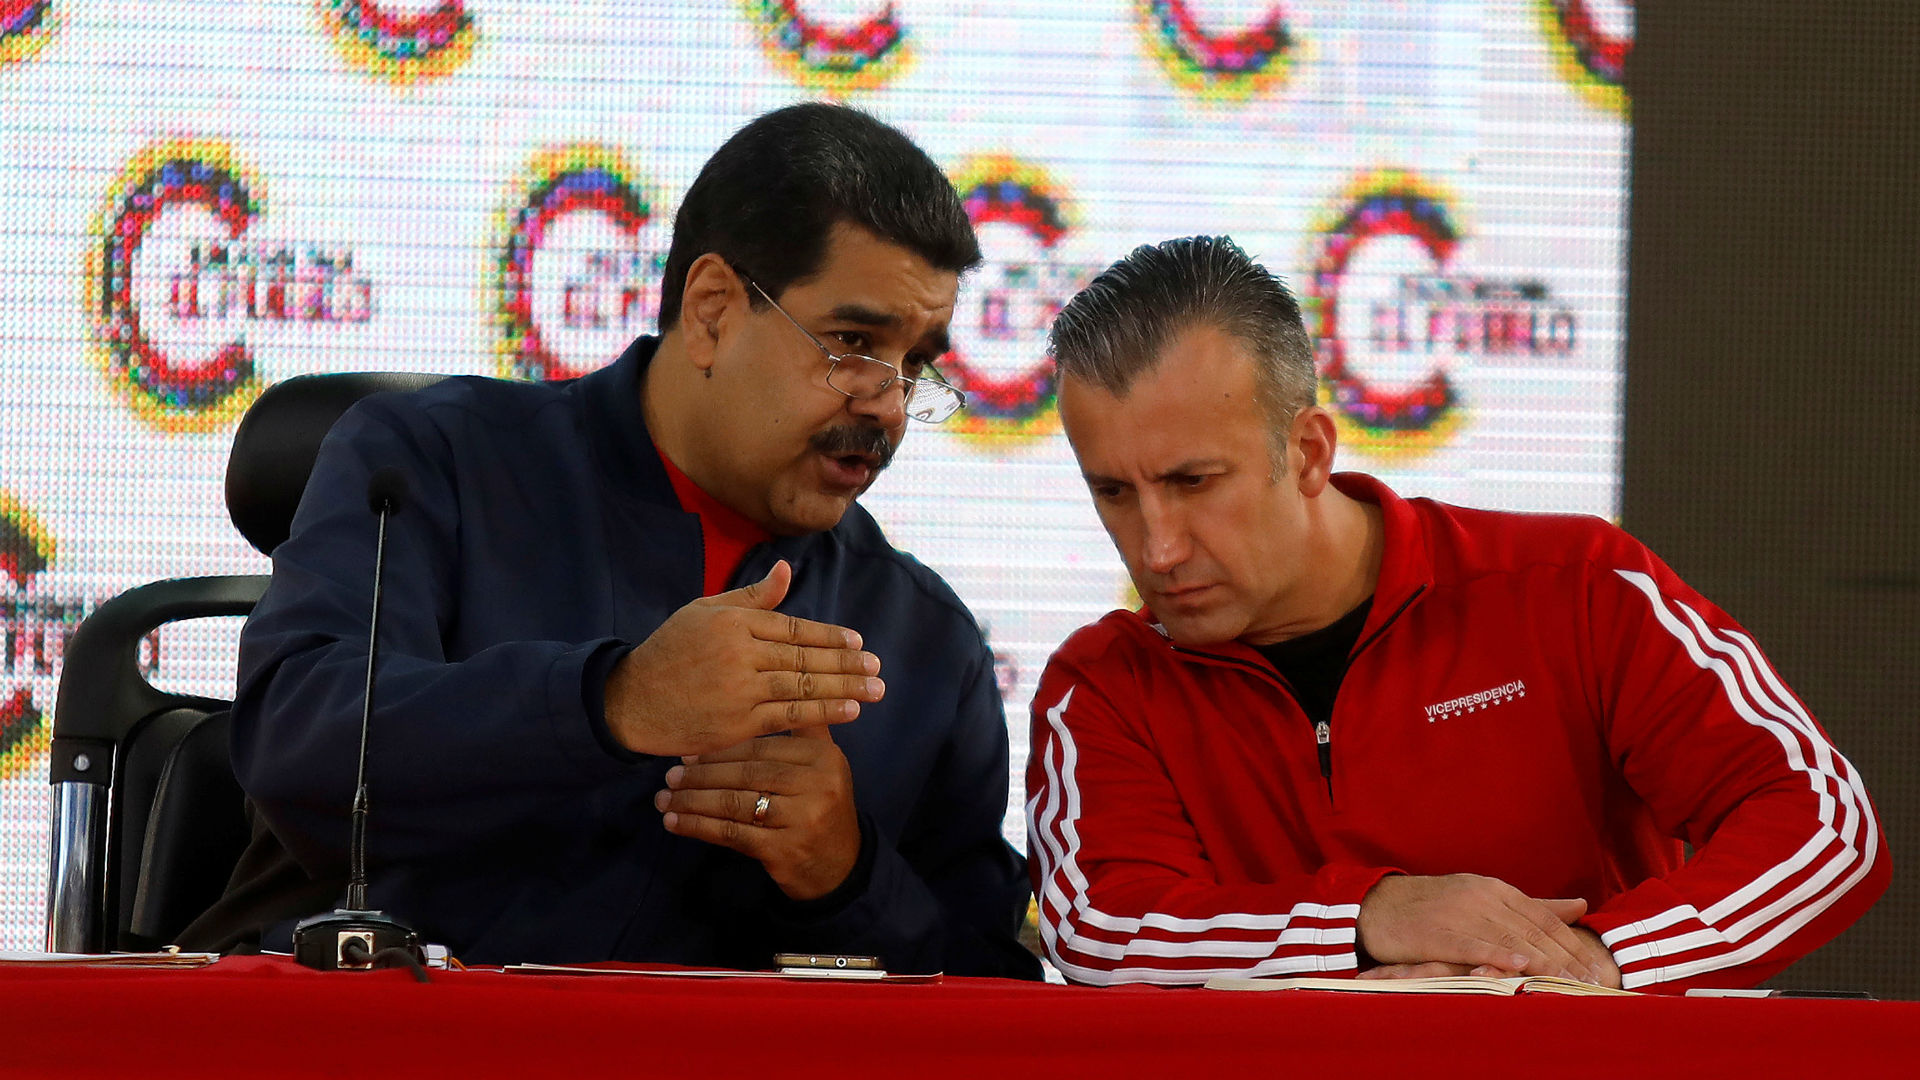 El dictador Nicolás Maduro inició una purga de funcionarios chavistas cercanos a Tareck El Aissami (Reuters)